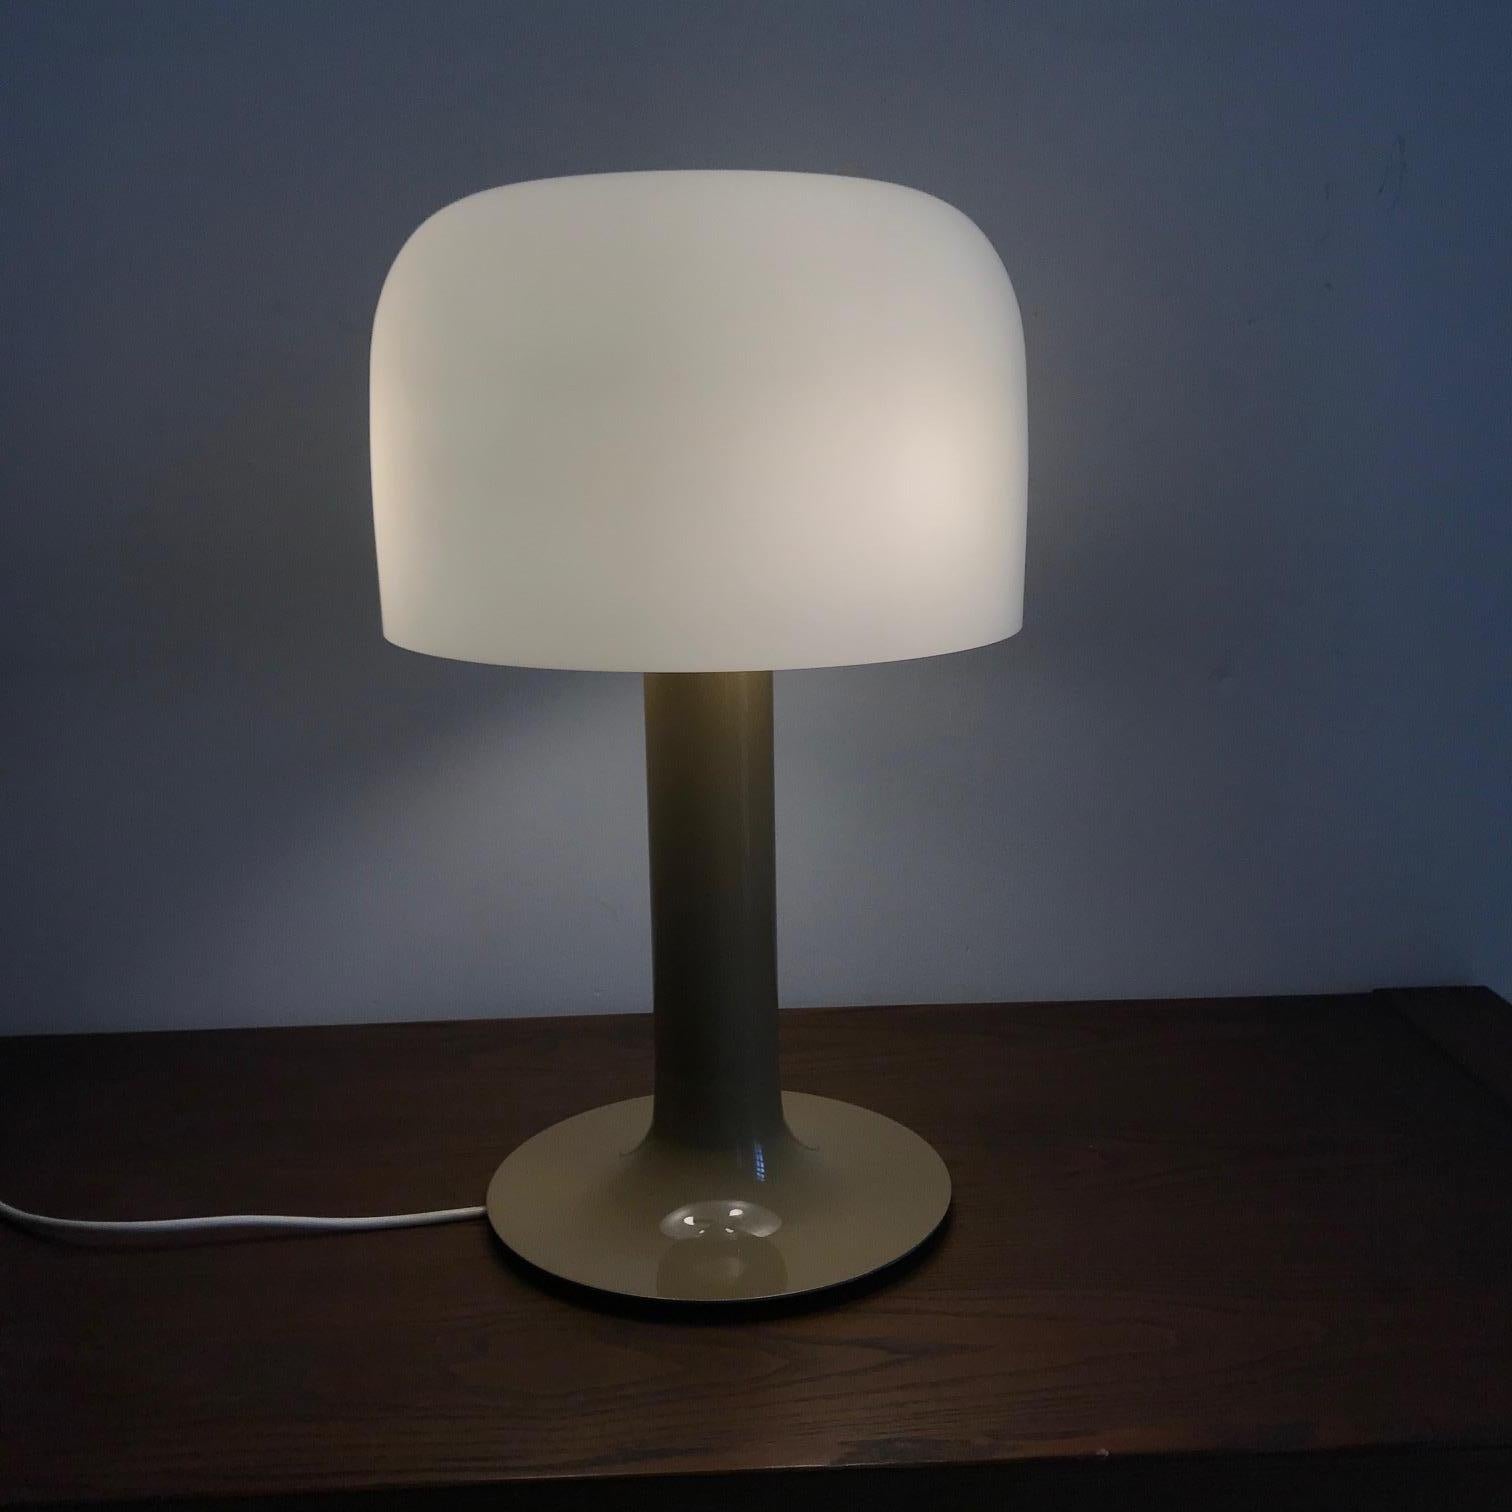 Michel Mortier
Rare table lamp model 